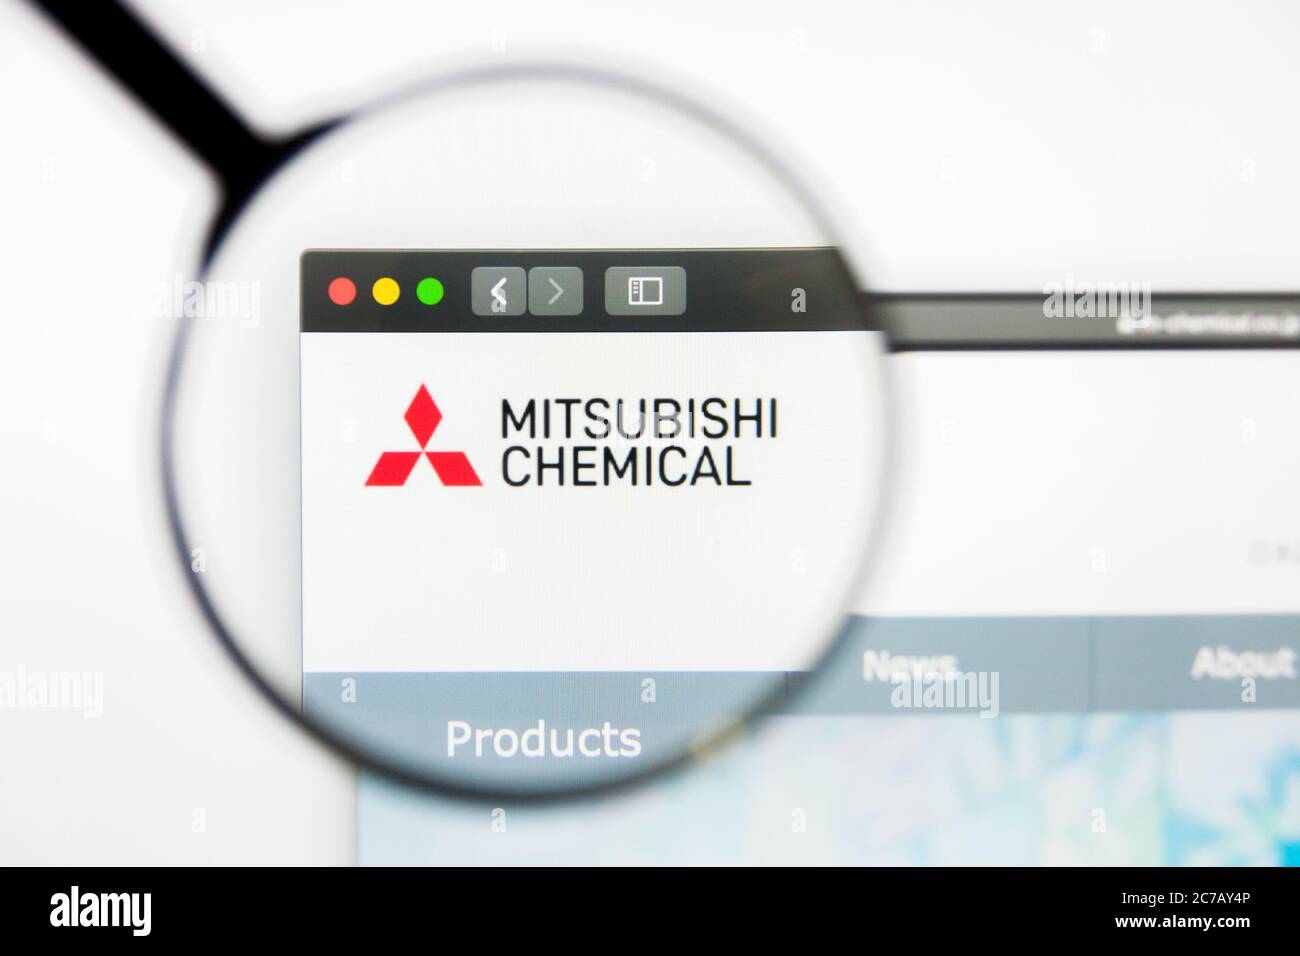 Los Angeles, Californie, Etats-Unis - 10 mars 2019 : éditorial illustratif, page d'accueil du site Web Mitsubishi Chemical. Logo Mitsubishi Chemical visible sur Banque D'Images